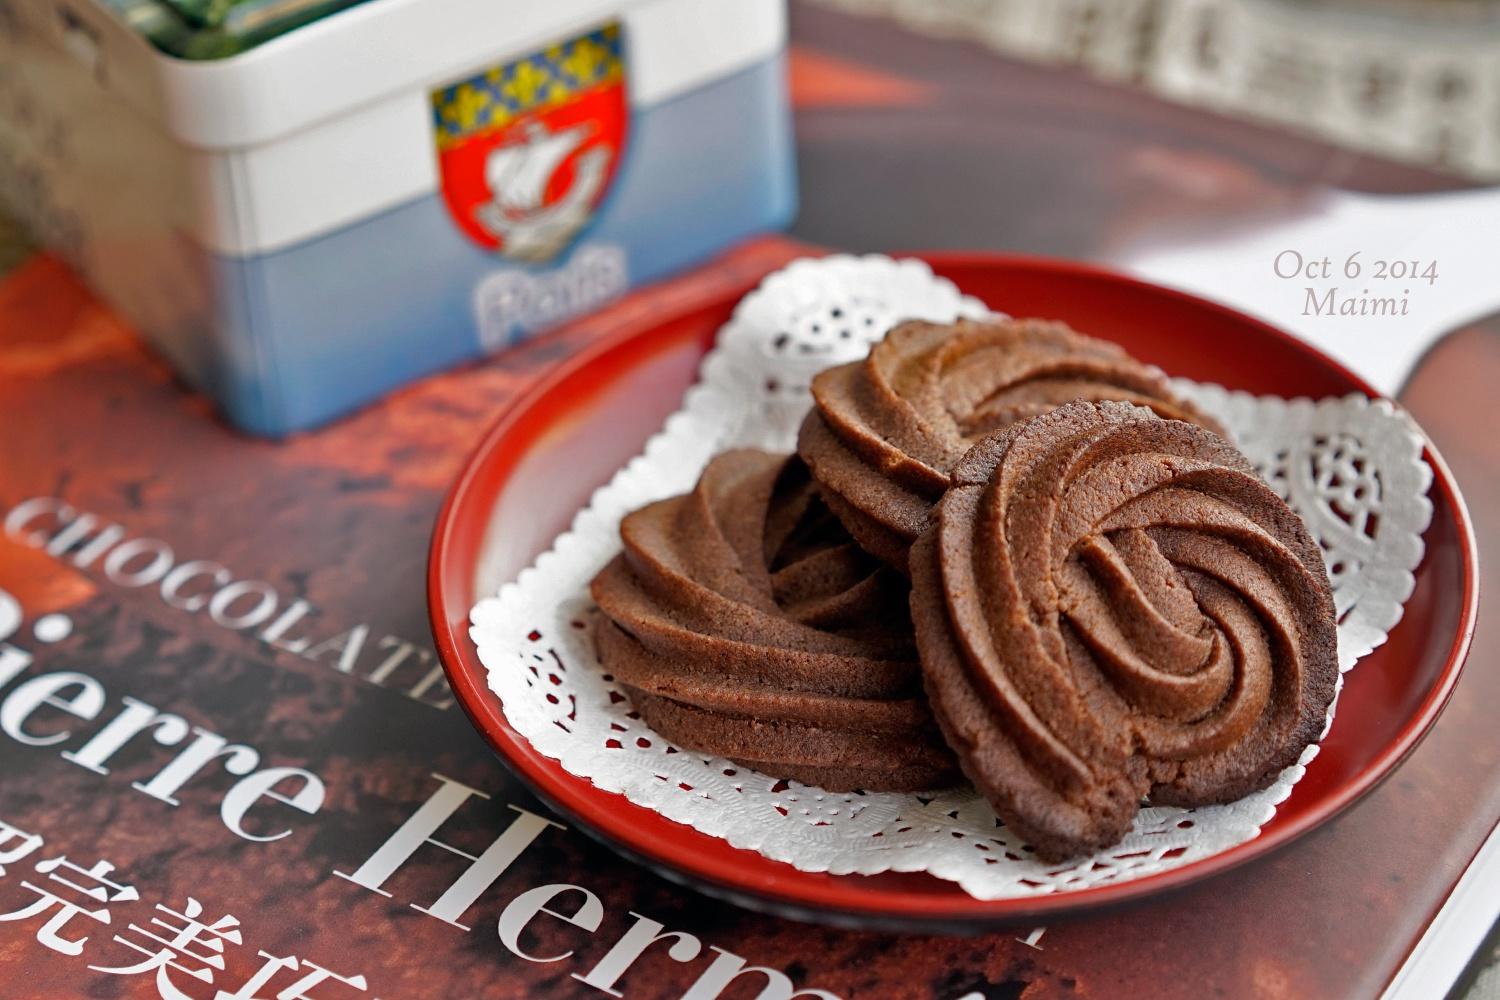 【Pierre Hermé】维也纳巧克力沙布列 Viennese Chocolate Sablés